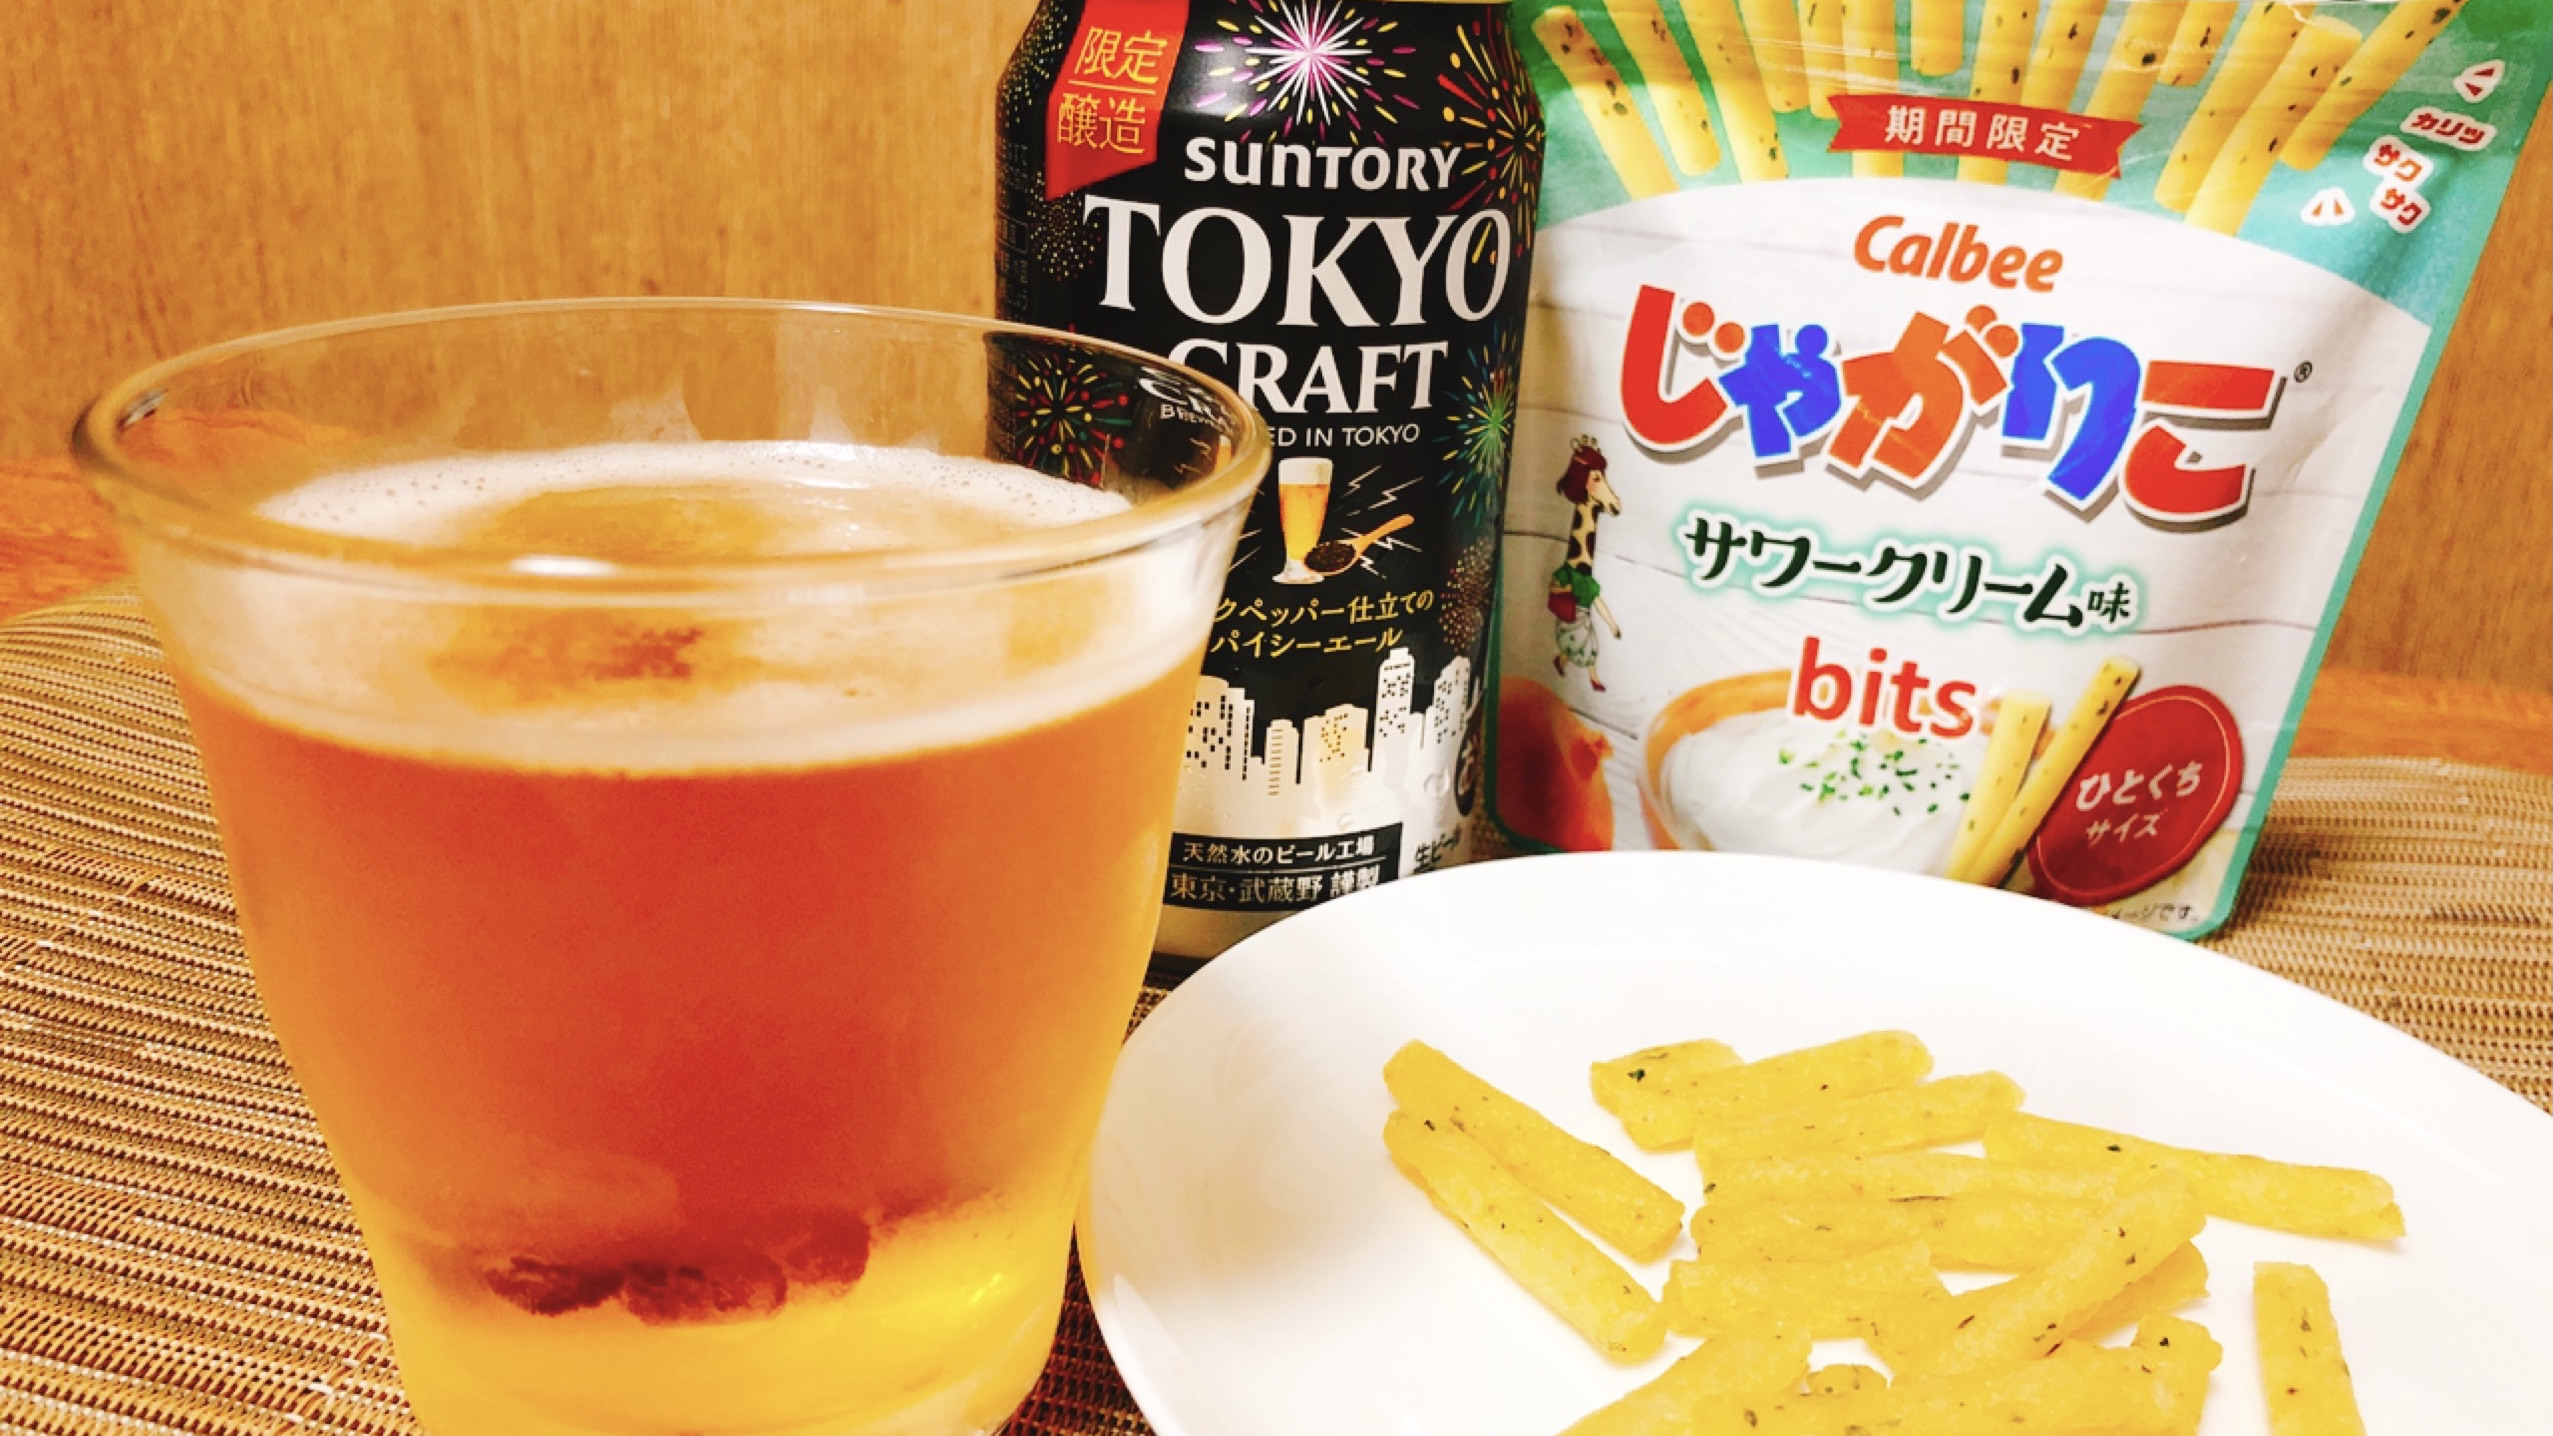 ブラックペッパー味のビール!?「東京クラフト〈スパイシーエール〉」を一足先にいただきます!　じゃがりこにもバッチリ合う!　#今週のコンビニ酒